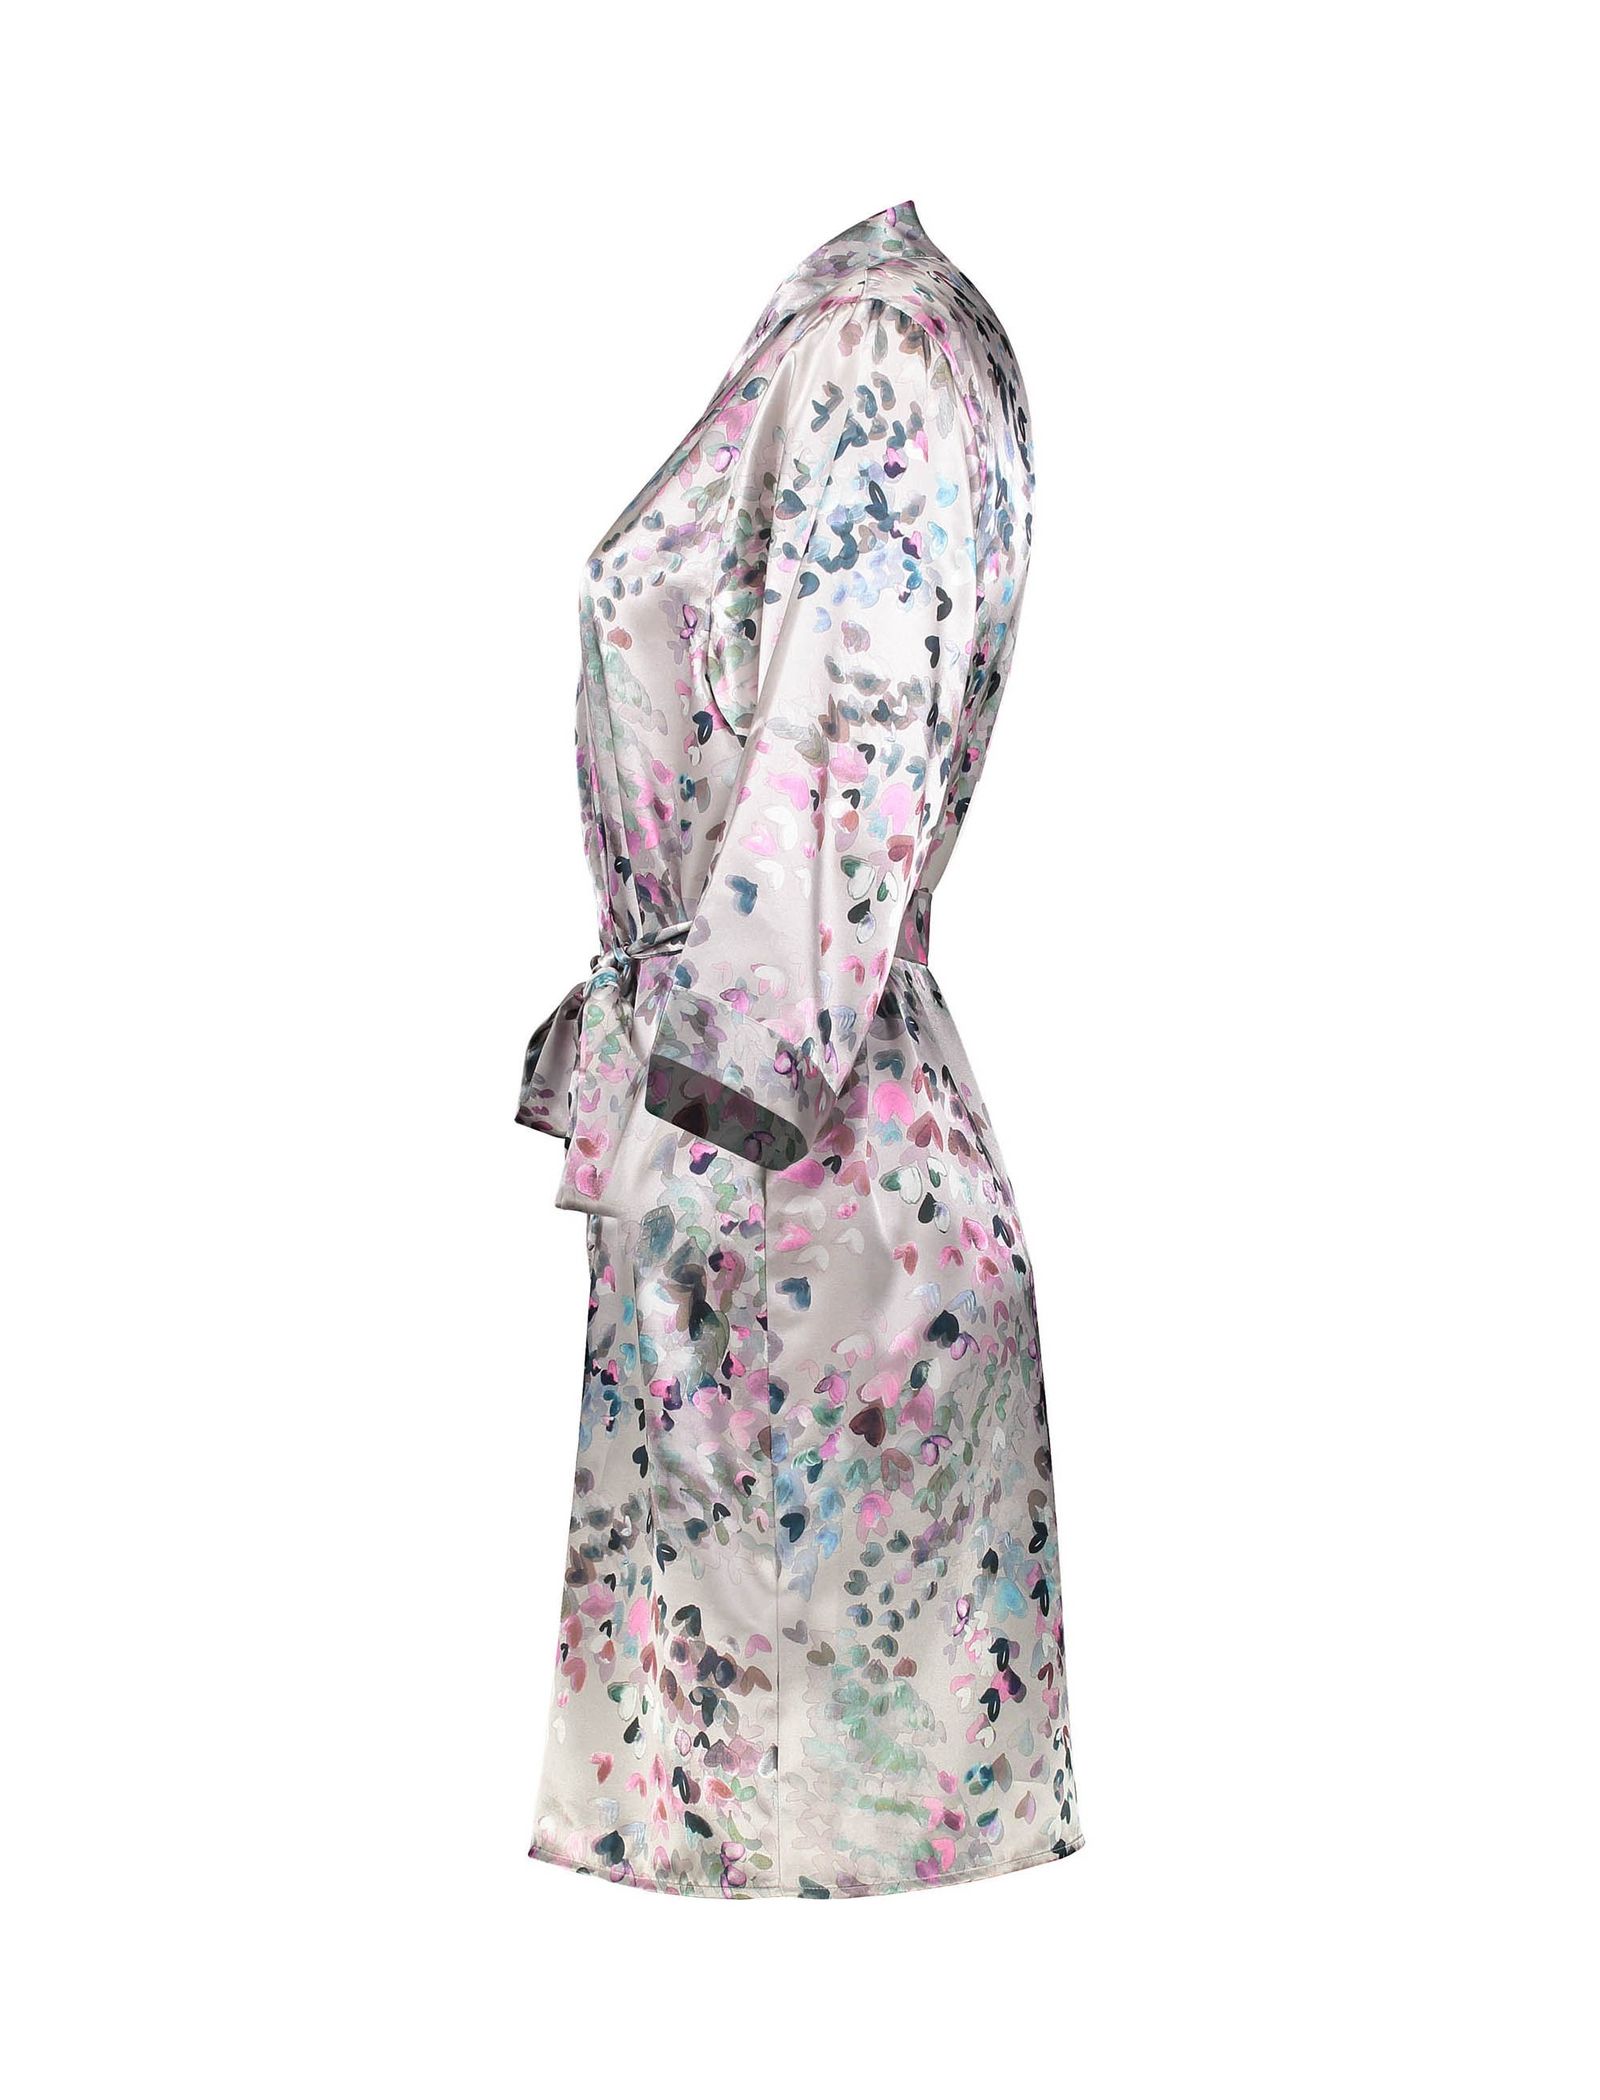 لباس خواب کوتاه زنانه - رد هرینگ - چند رنگ   - 6